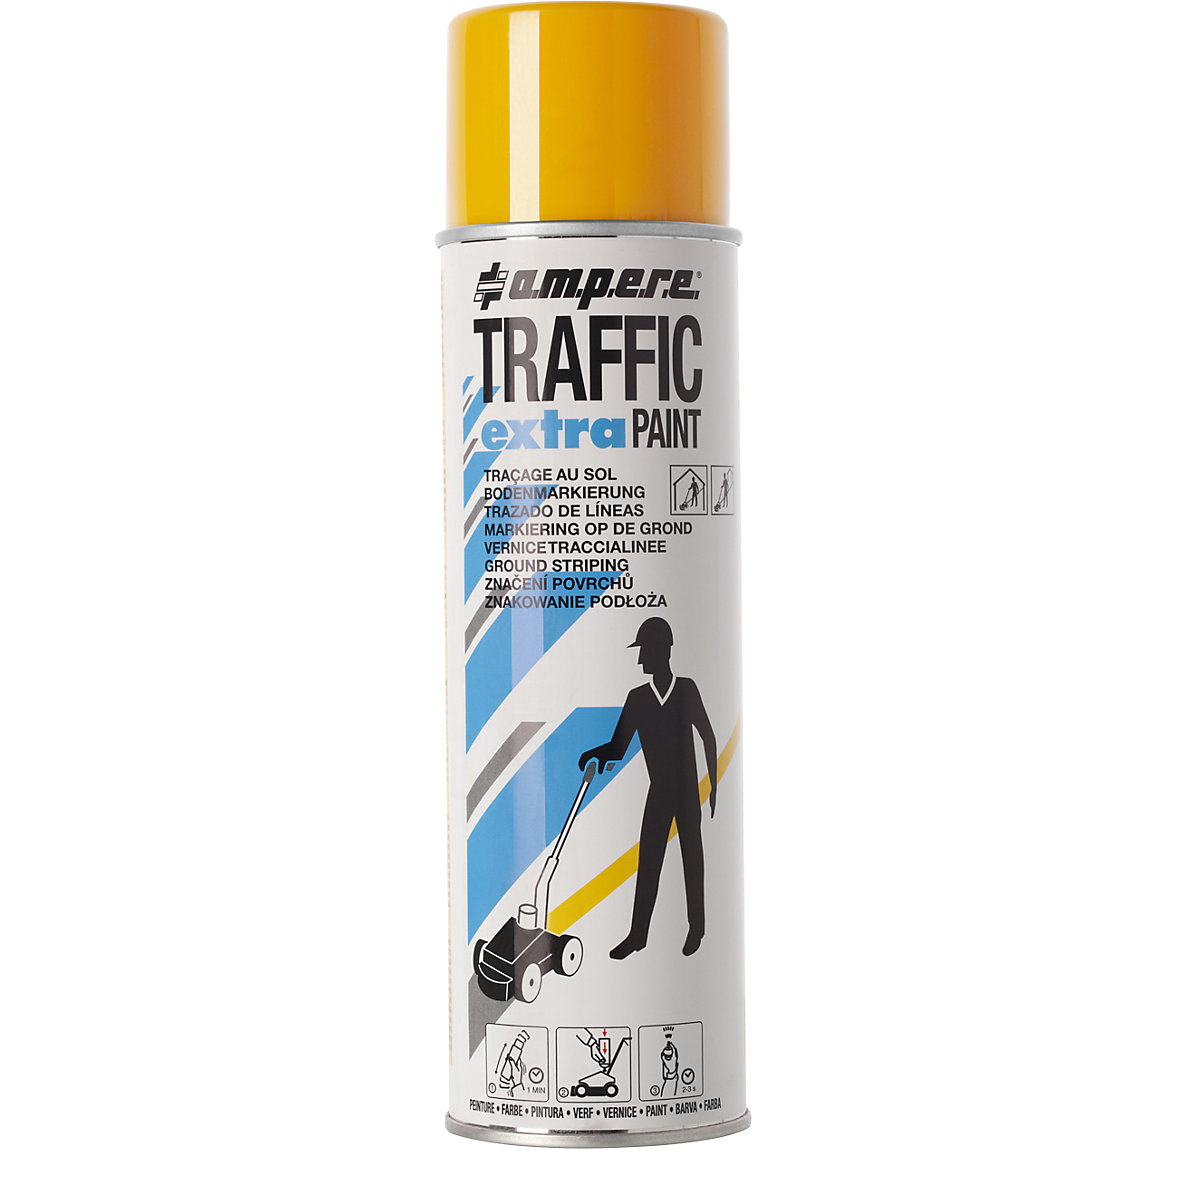 Označevalna barva Traffic extra Paint® za velike obremenitve – Ampere, prostornina 500 ml, DE 12 pločevink, rumene barve-2